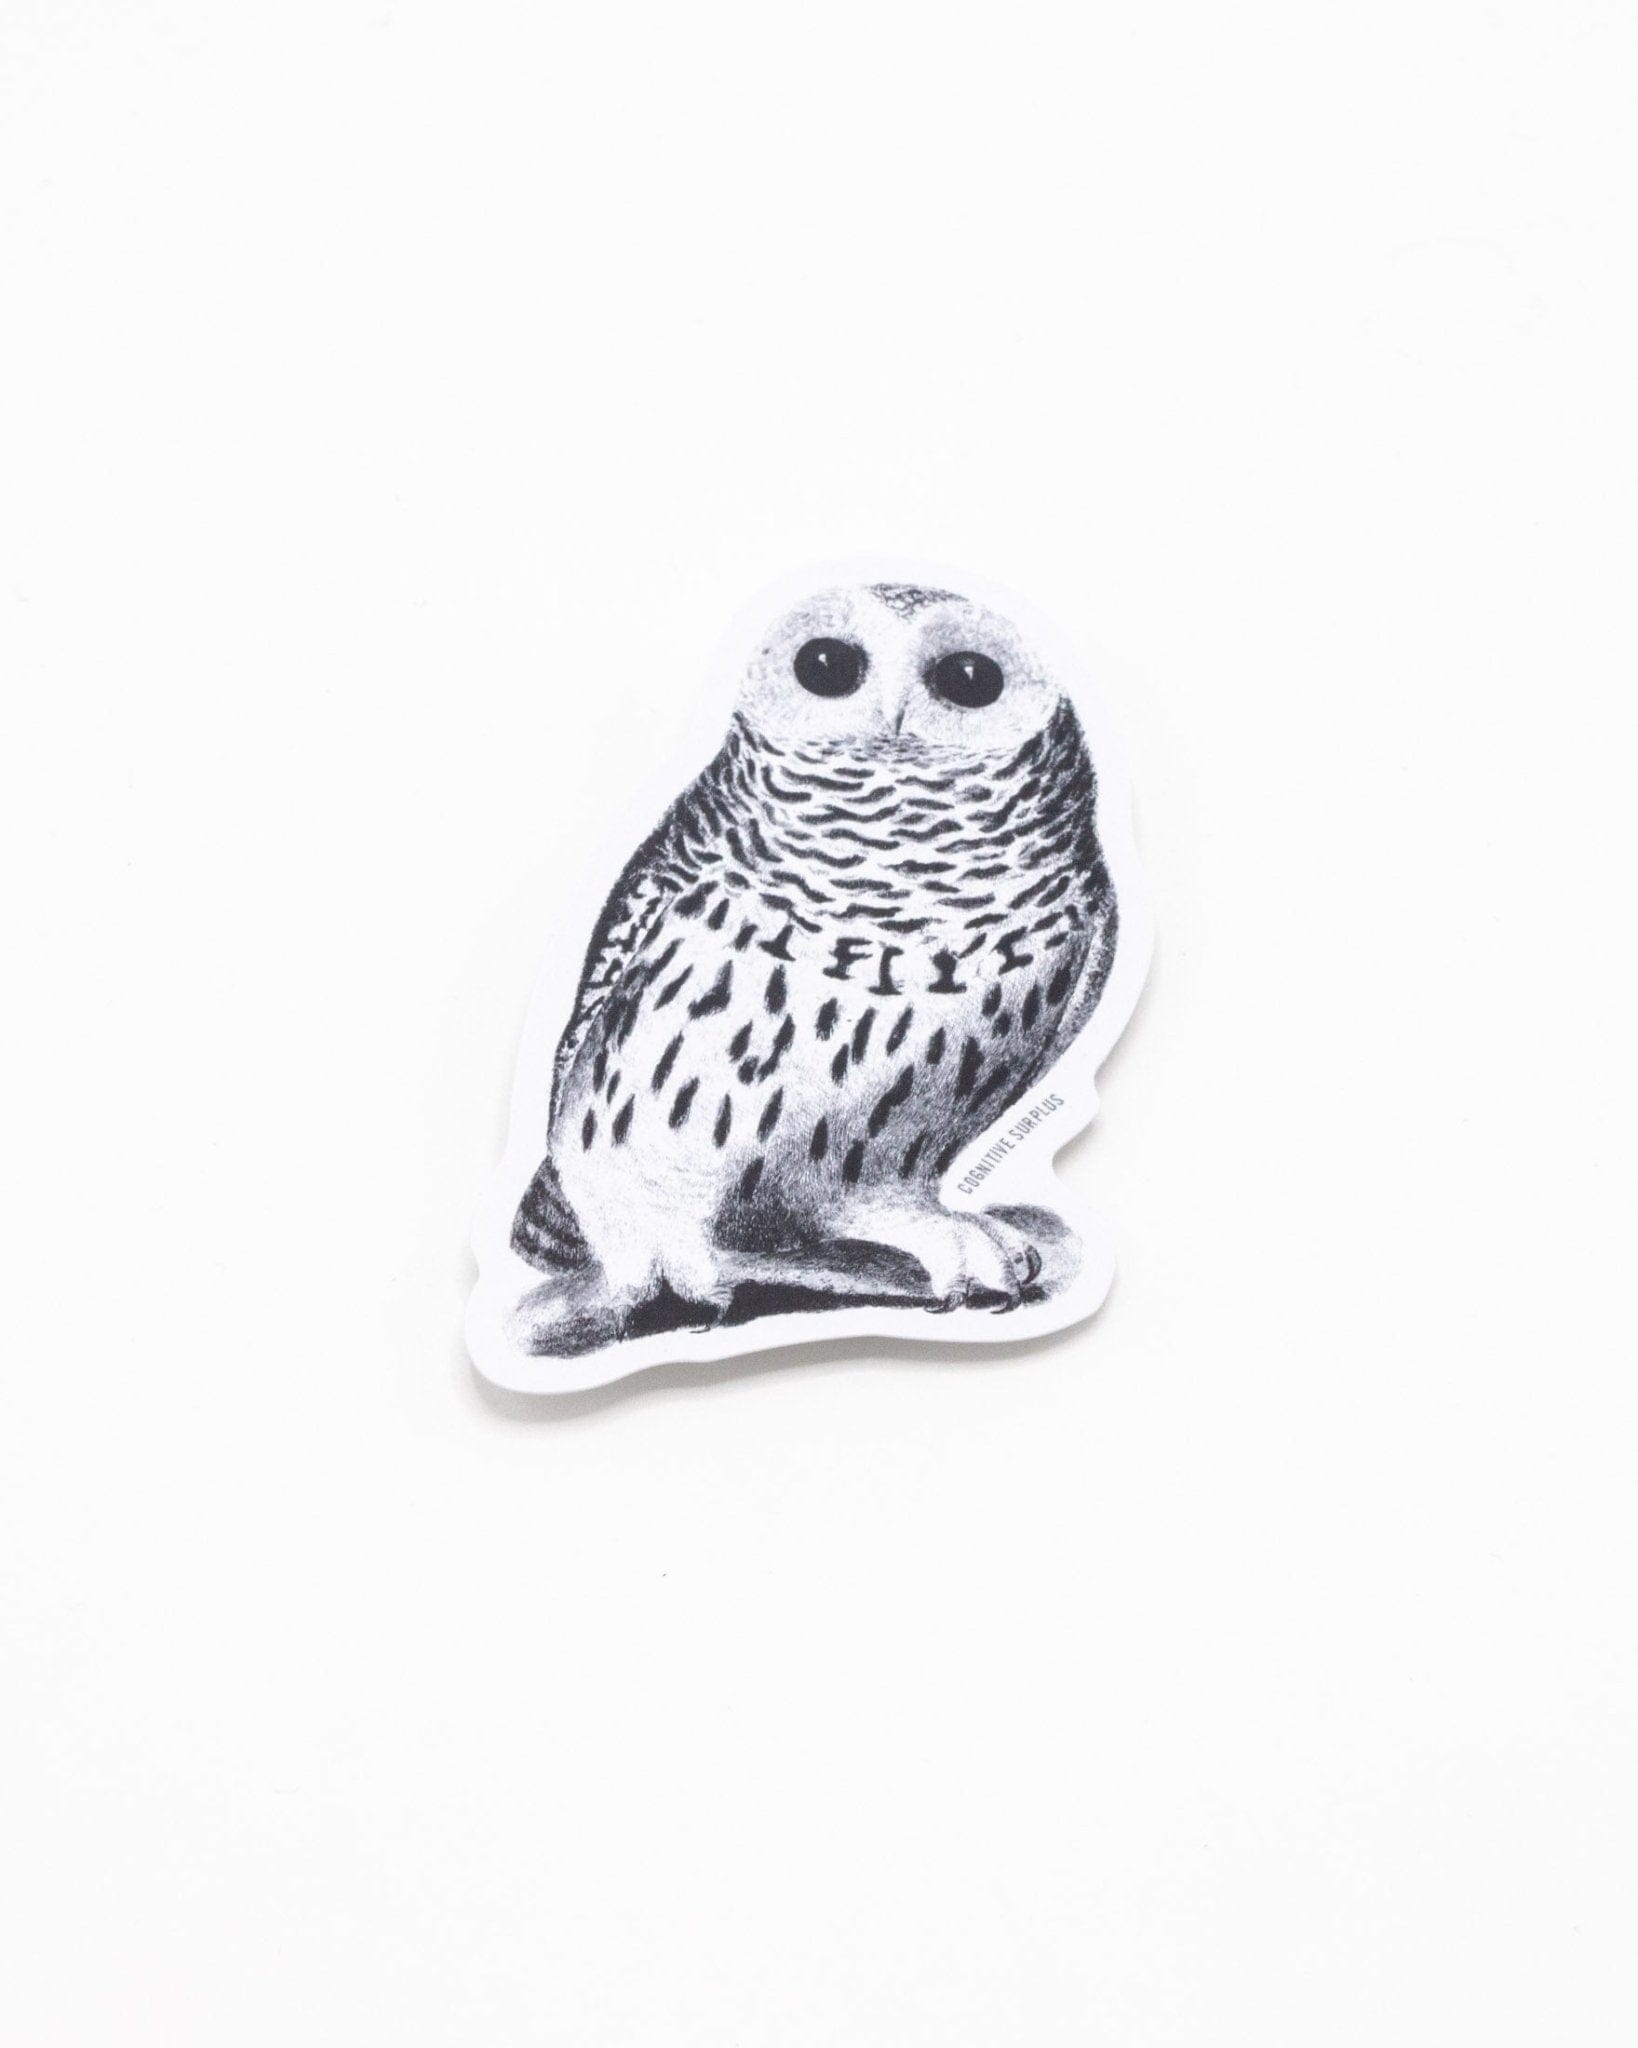 12 Pcs Owl Felt Stickers